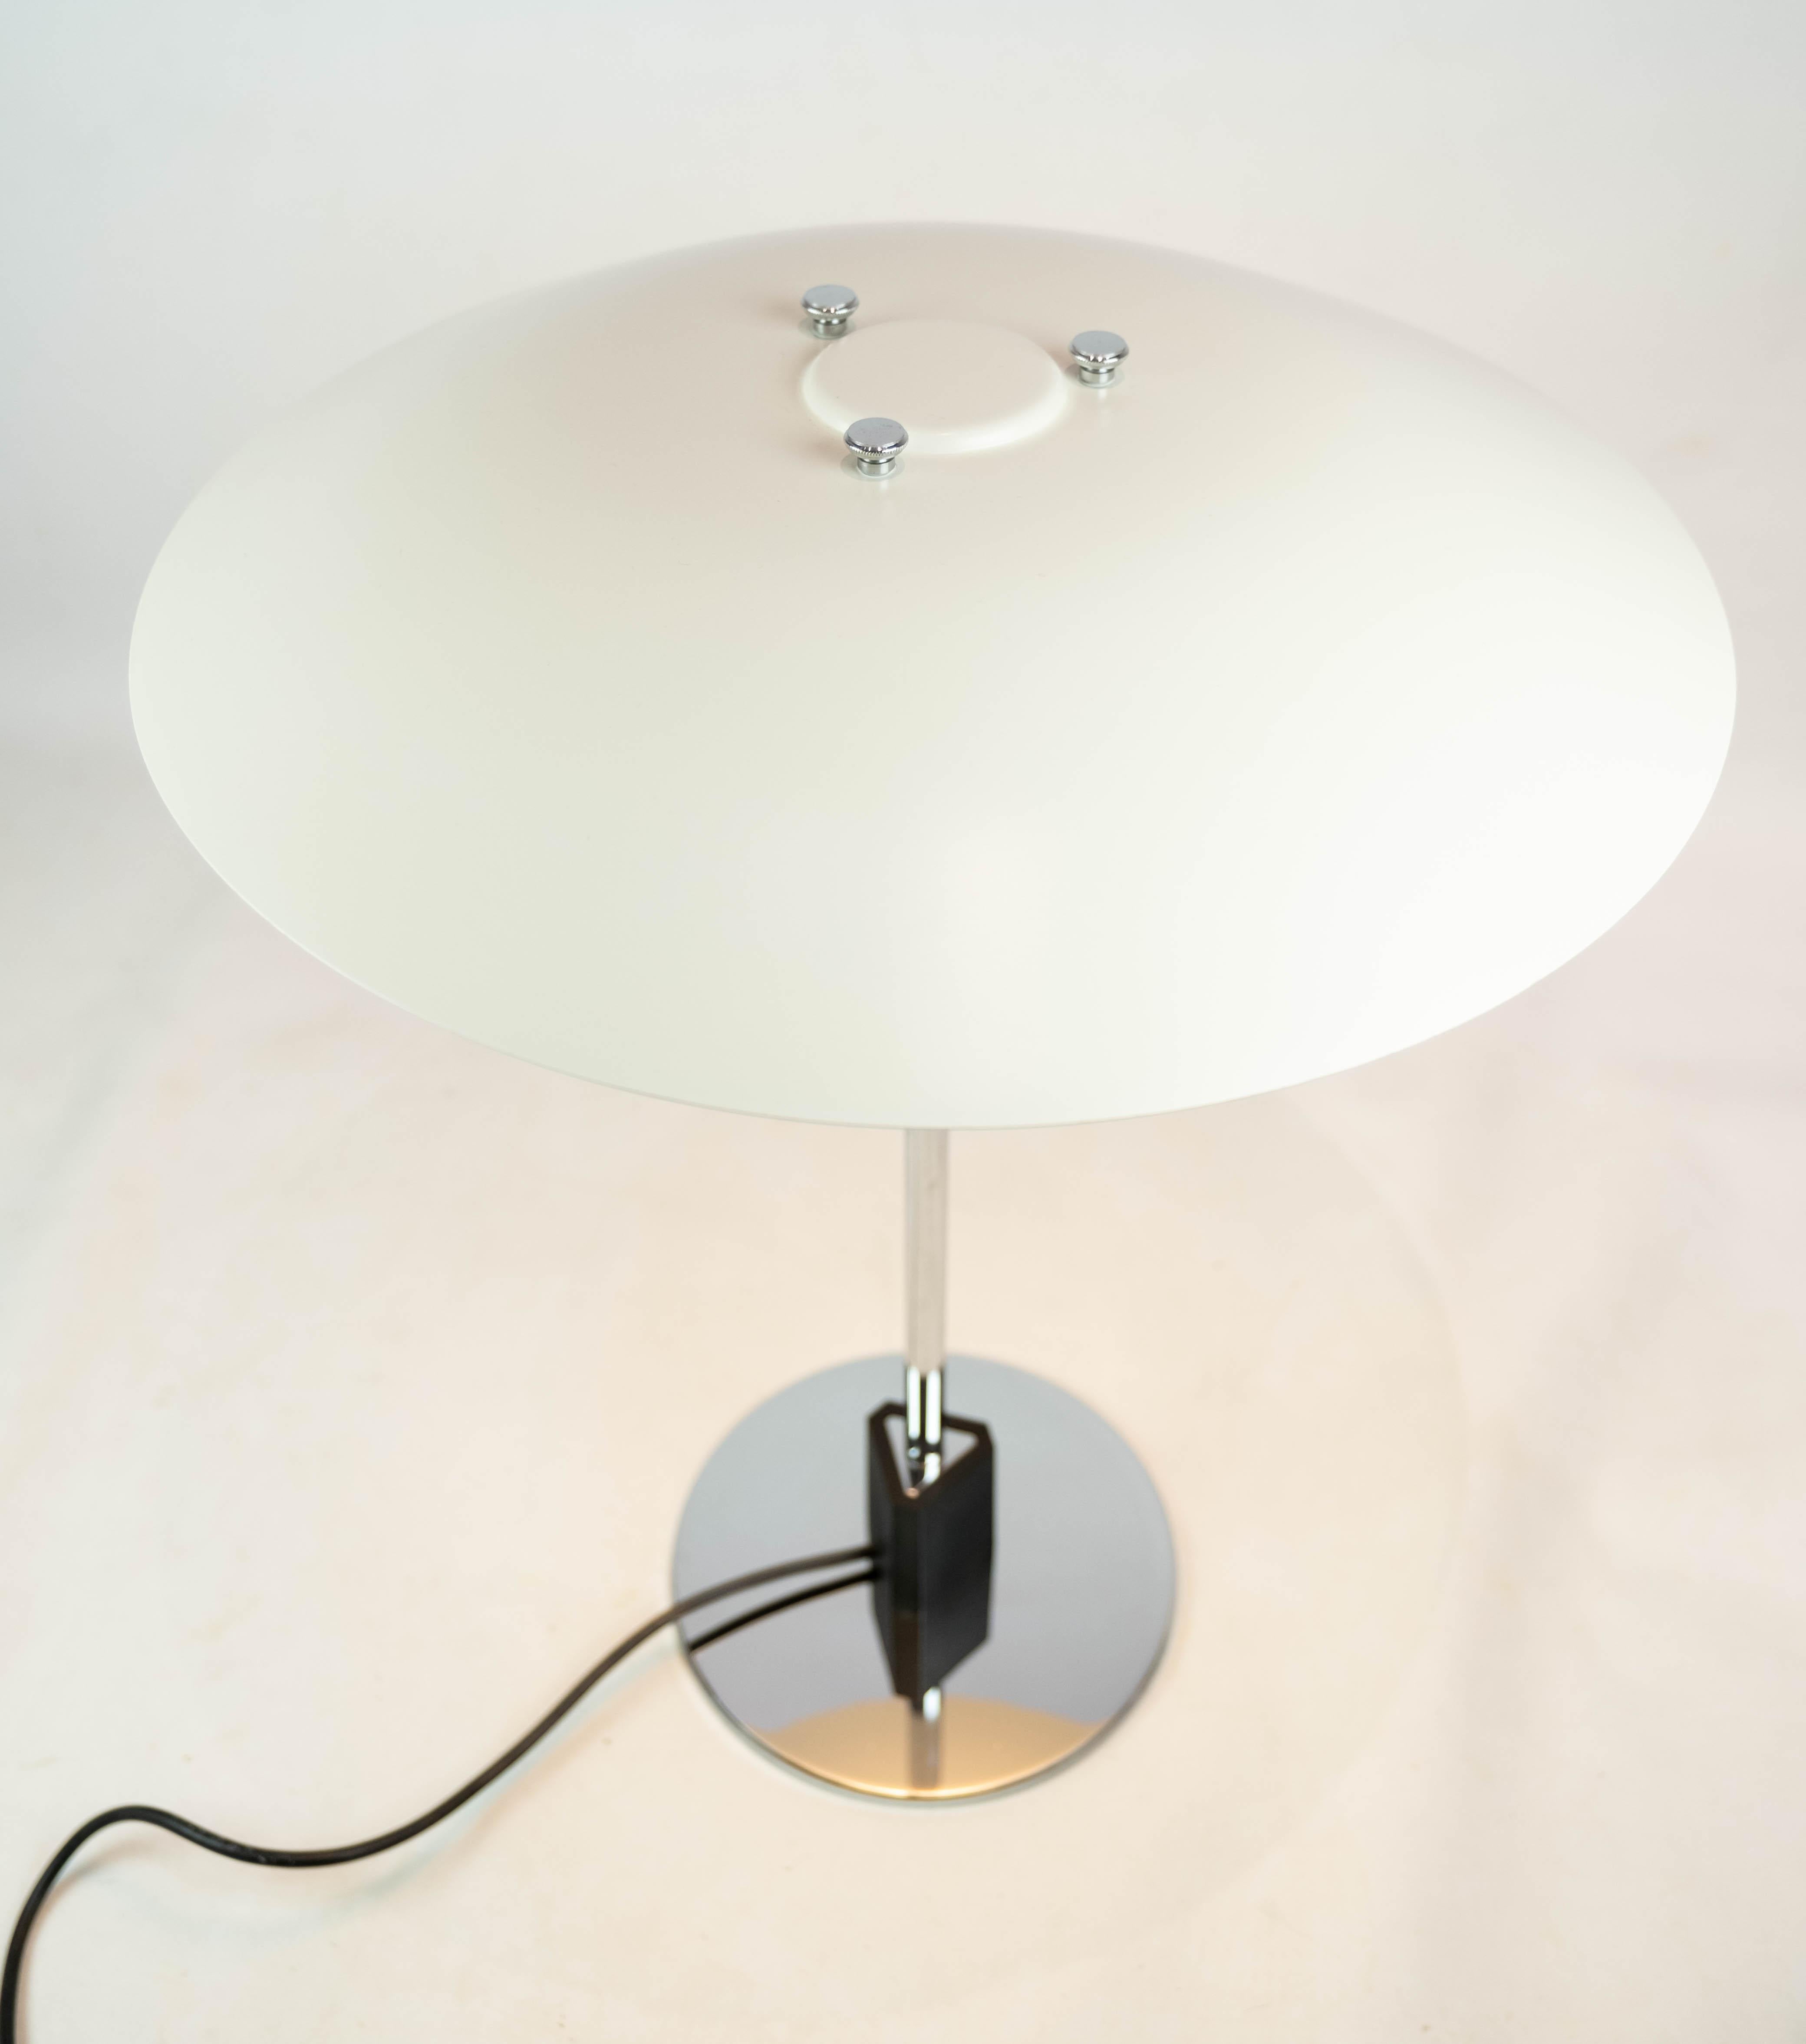 Lampe de table PH 4/3 conçue par Poul Henningsen et fabriquée par Louis Poulsen. La lampe est équipée d'un abat-jour en métal laqué blanc.